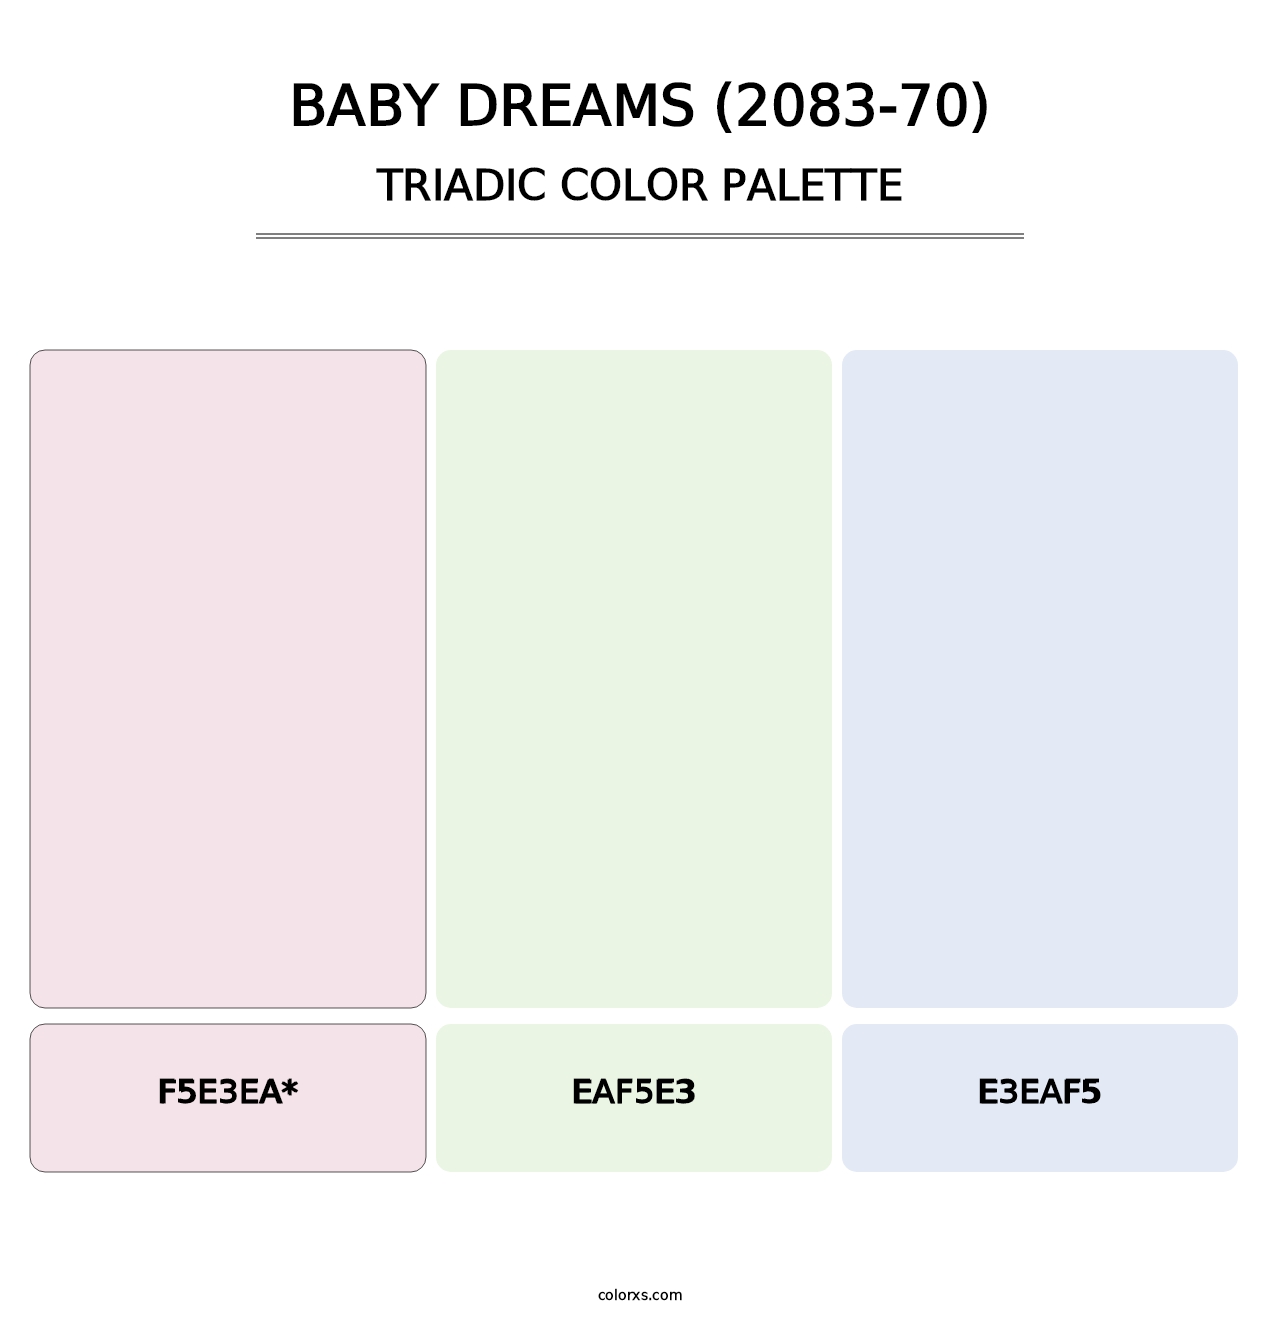 Baby Dreams (2083-70) - Triadic Color Palette